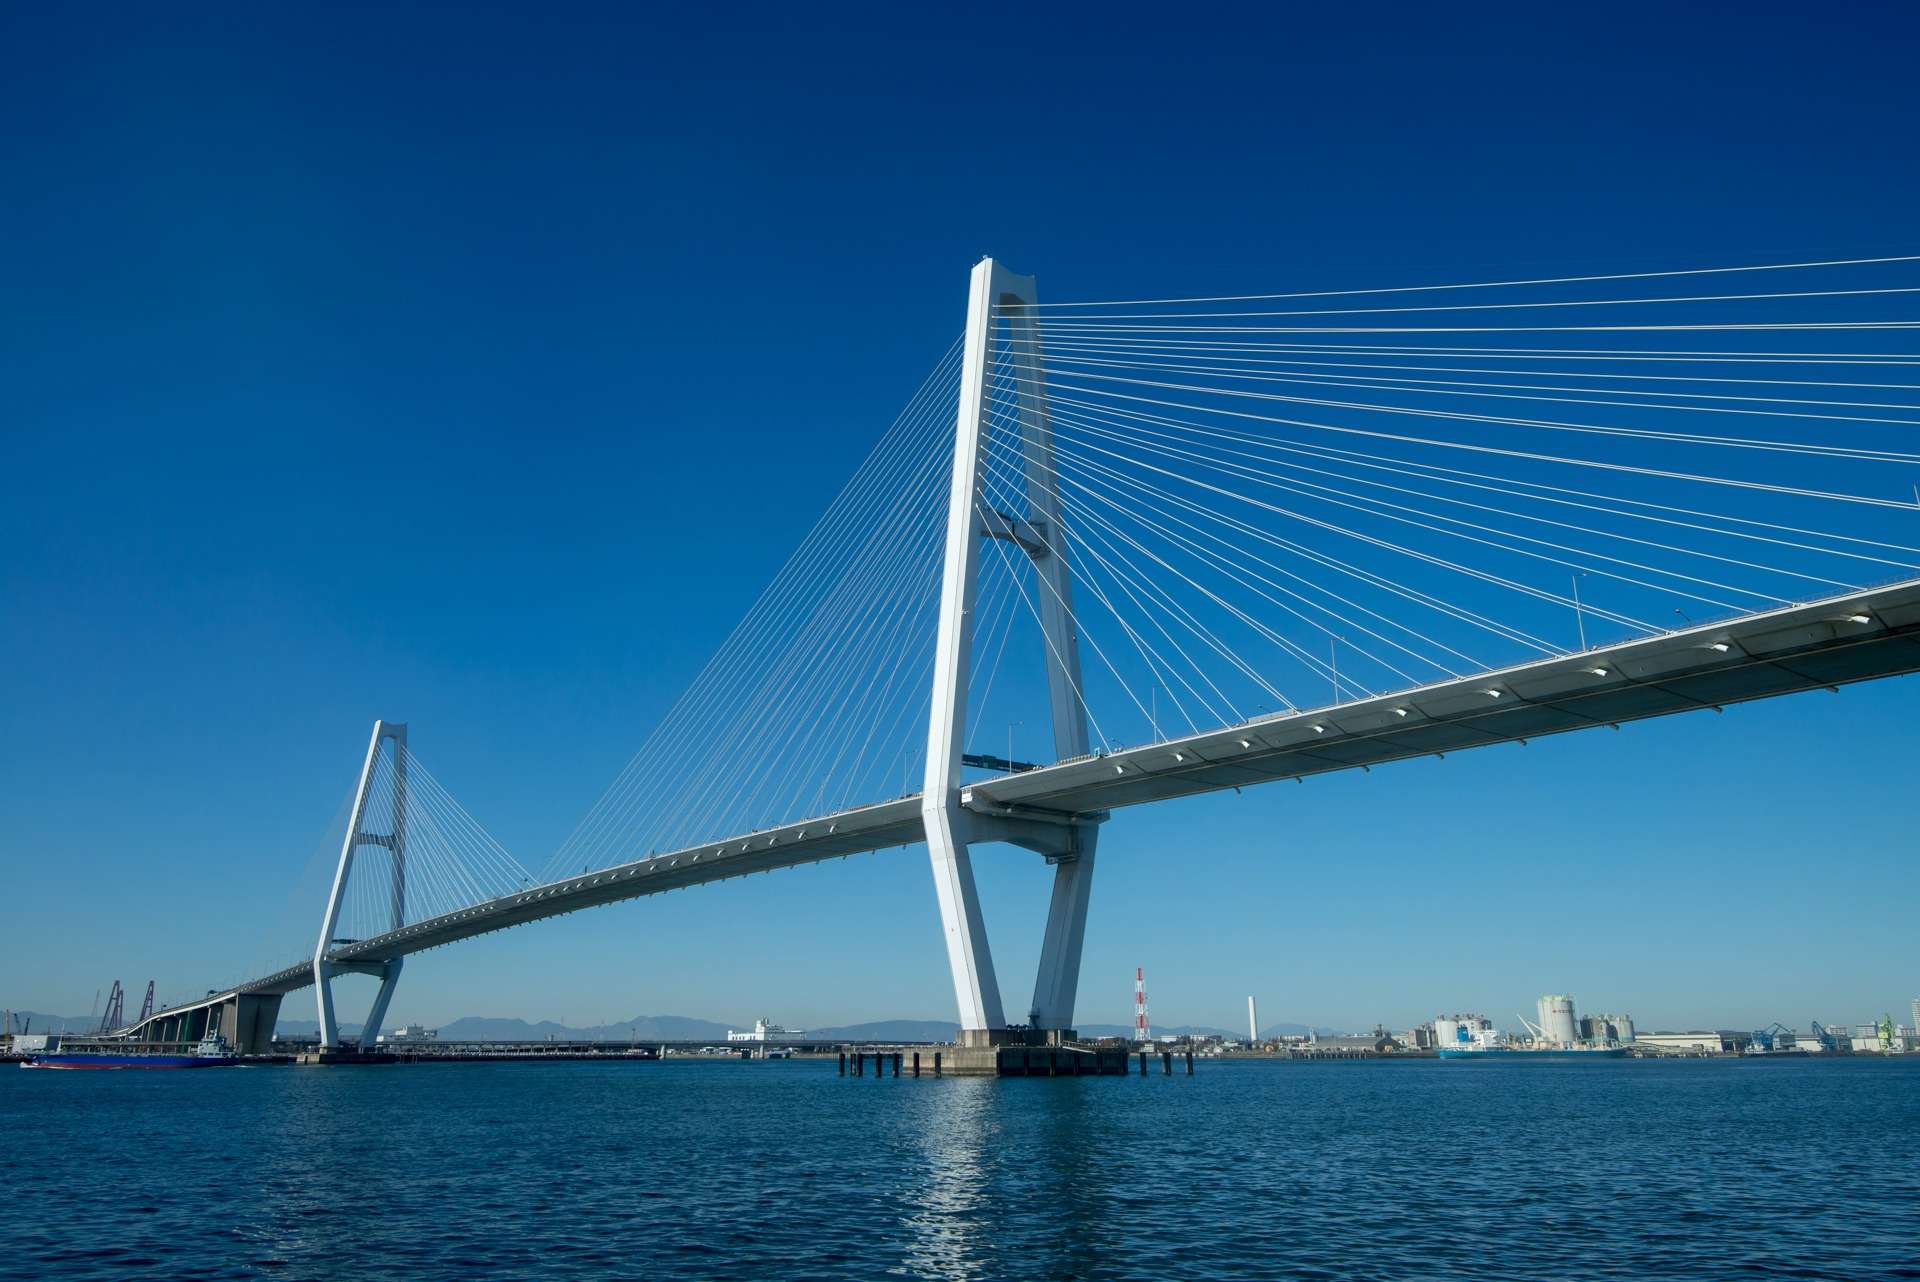 暮らしを守る橋梁耐震工事について東京より有益な知識を発信